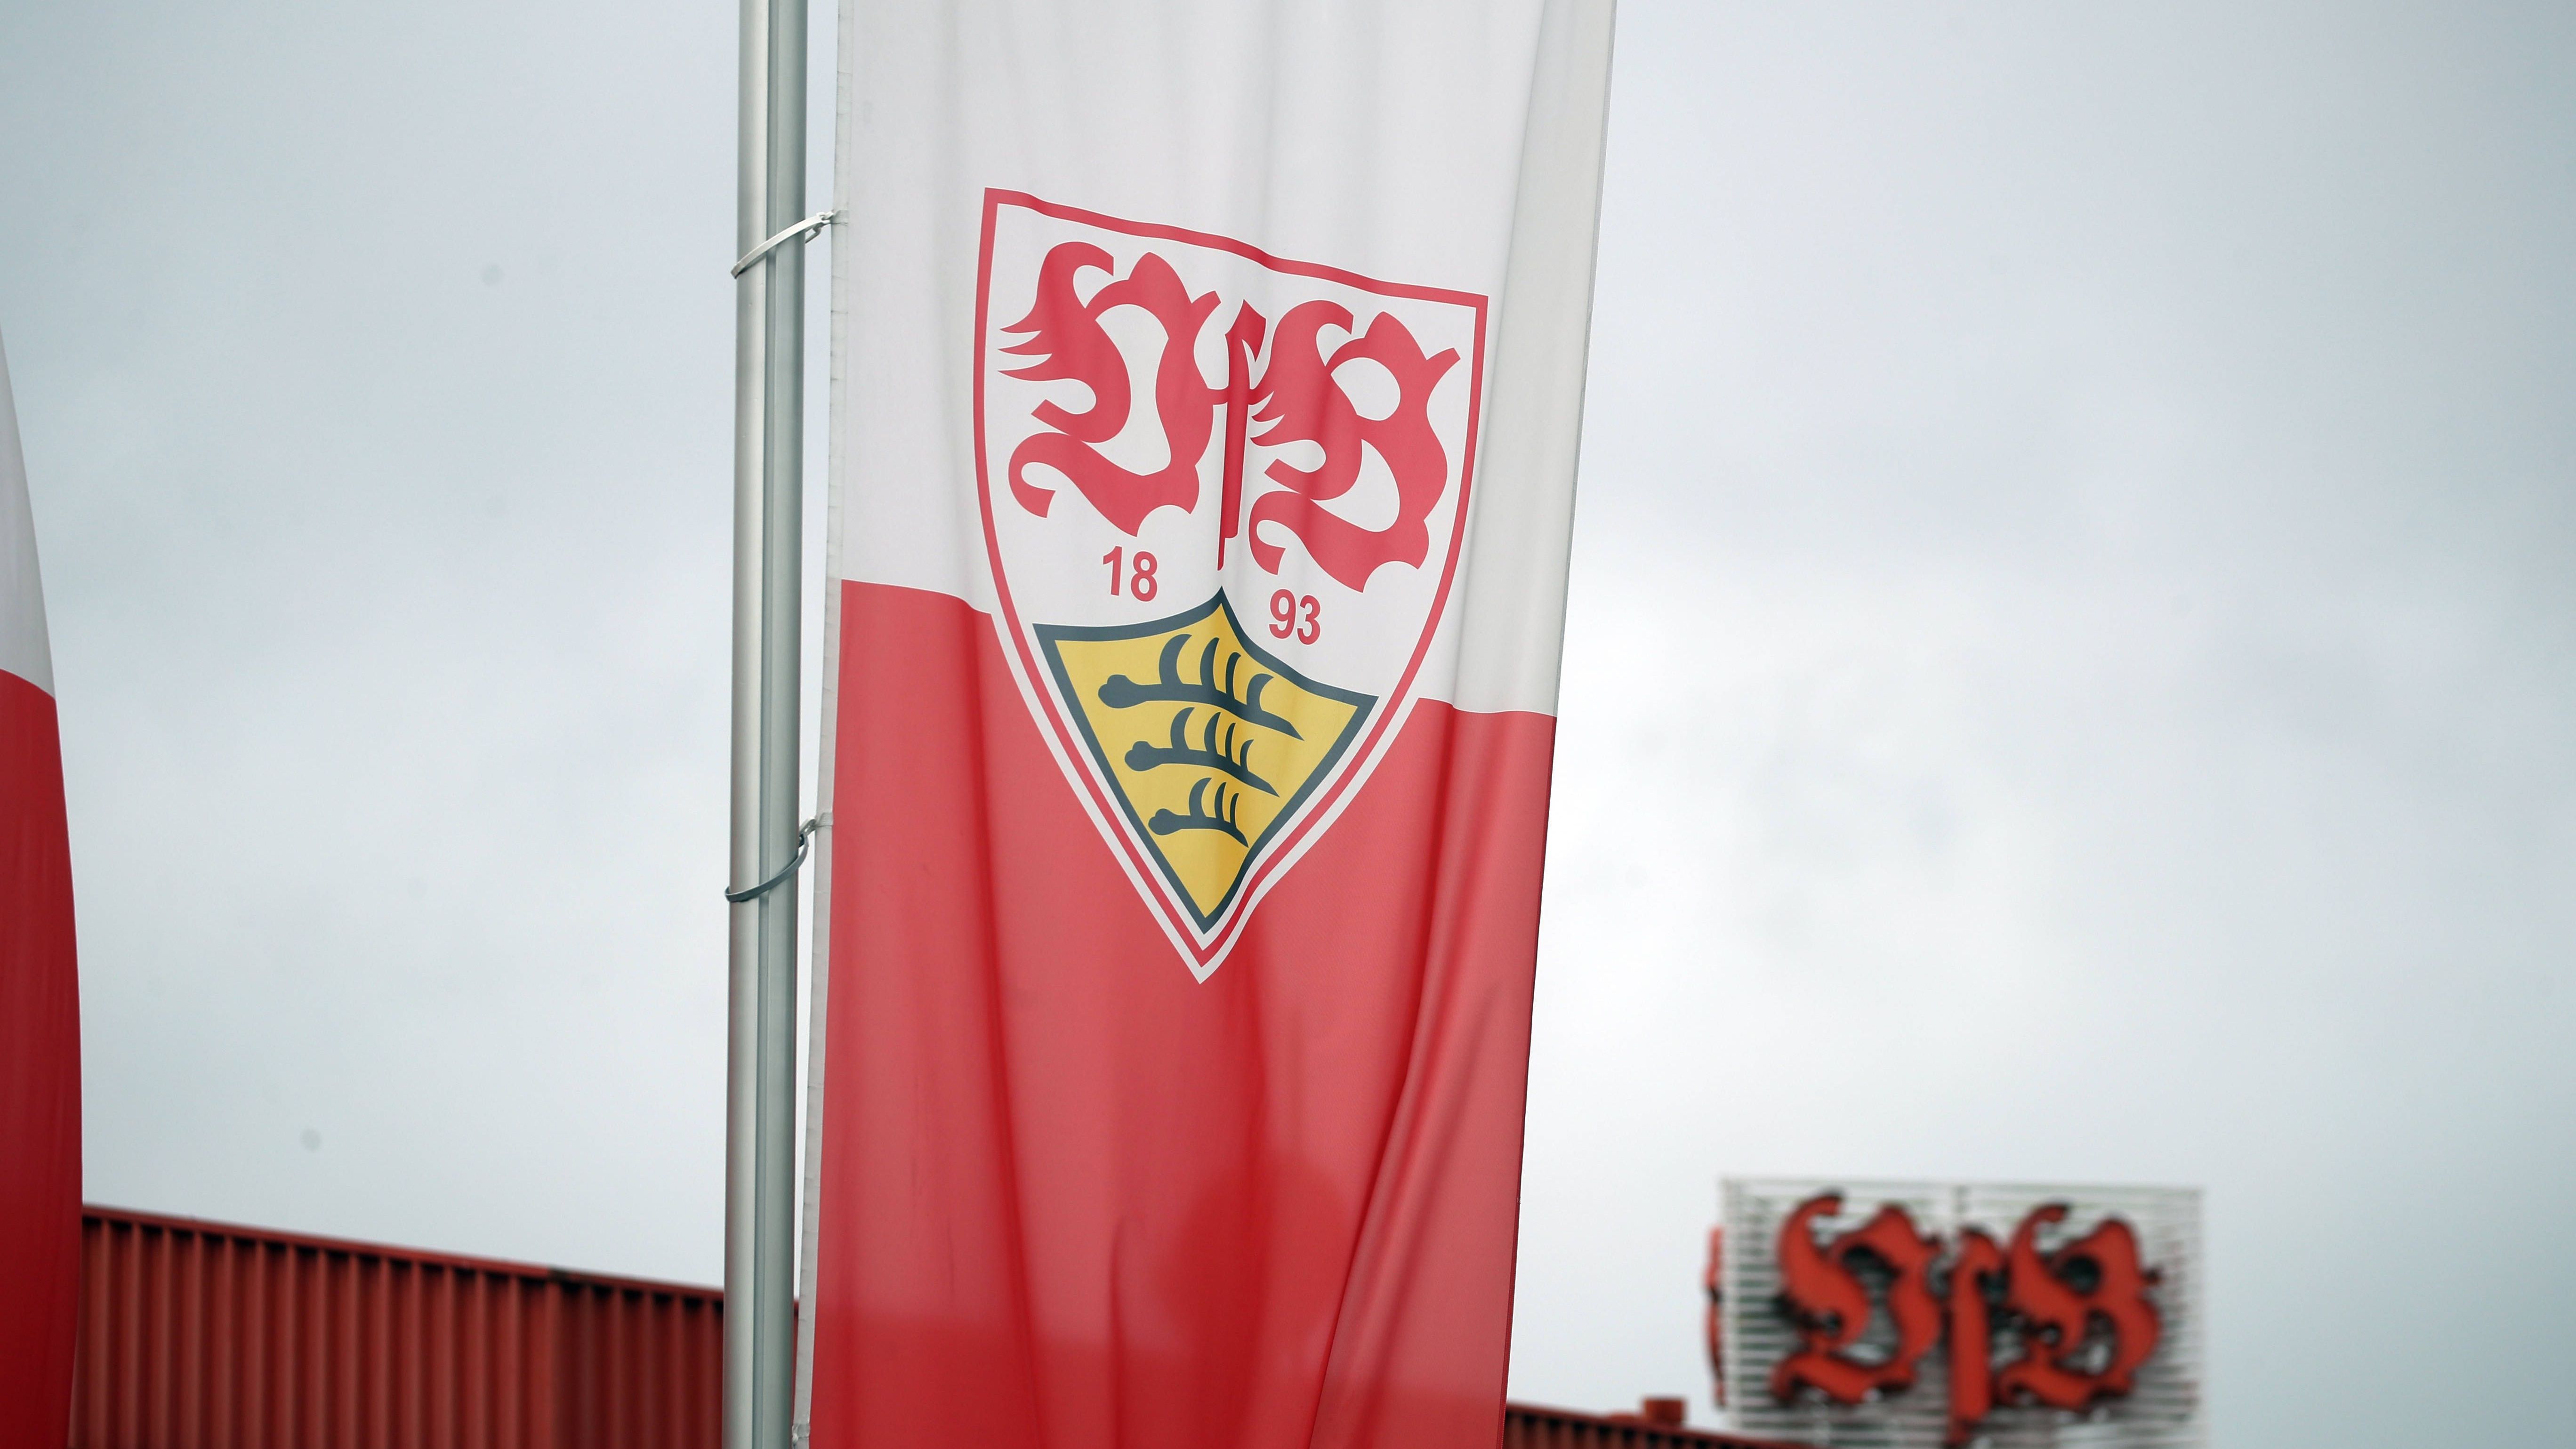 <strong>Platz 2: VfB Stuttgart (9. September 1893)</strong><br>In Stuttgart war nicht zuerst der Fußball, sondern das Ei - beim Rugby-Klub FV Stuttgart 1893. Am 25. August 1911 wurde dann aus dem FV und dem Kronenklub Cannstatt der heutige VfB Stuttgart 1893.<br><br><strong>Saisons in der Bundesliga: 56</strong>